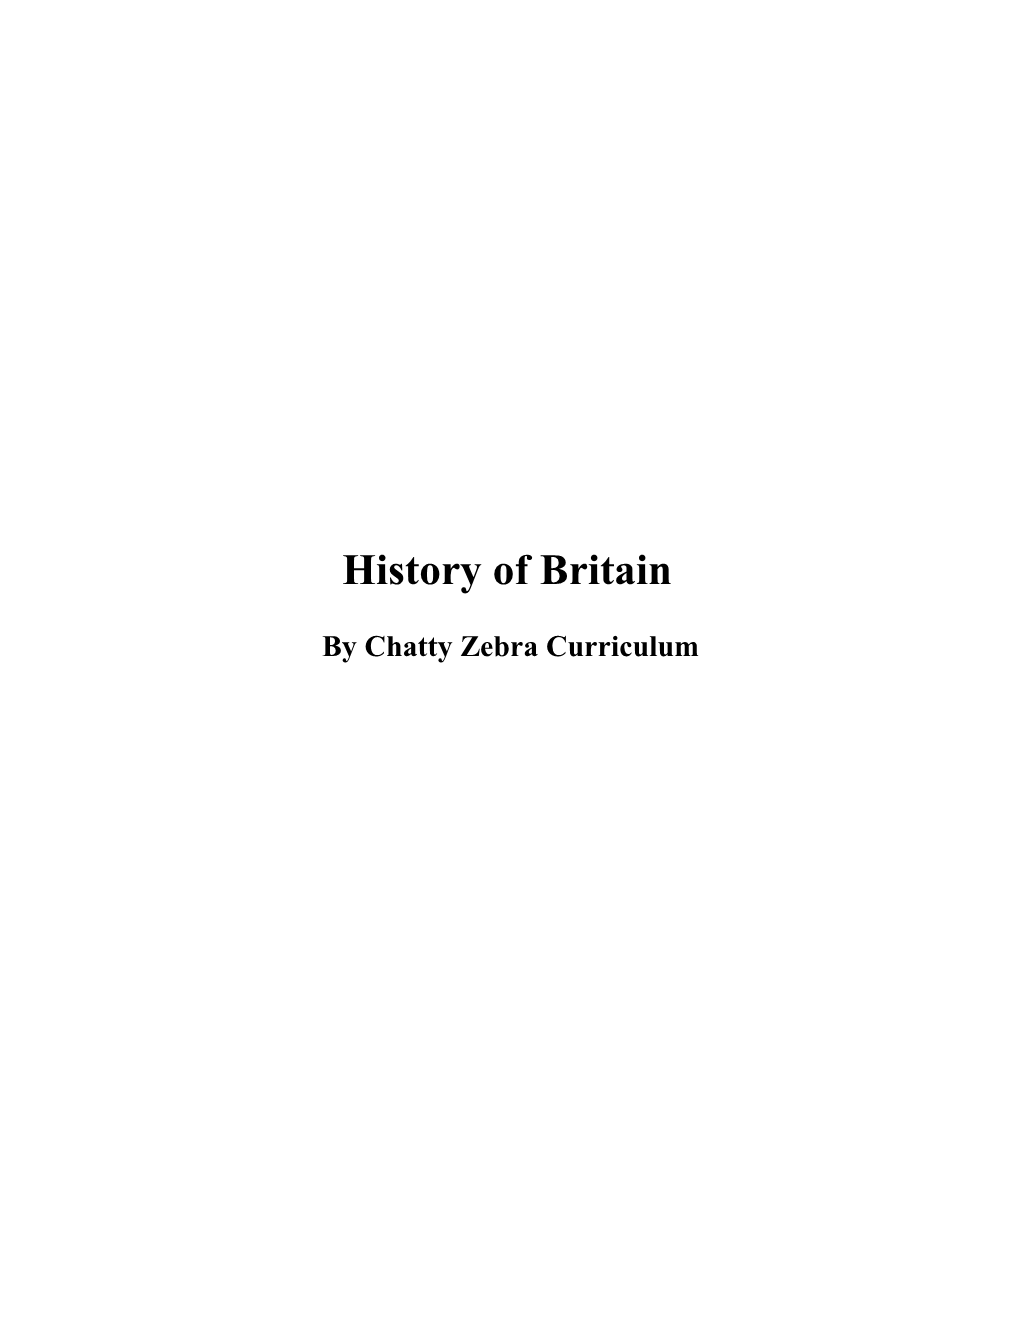 History of Britain Curriculum